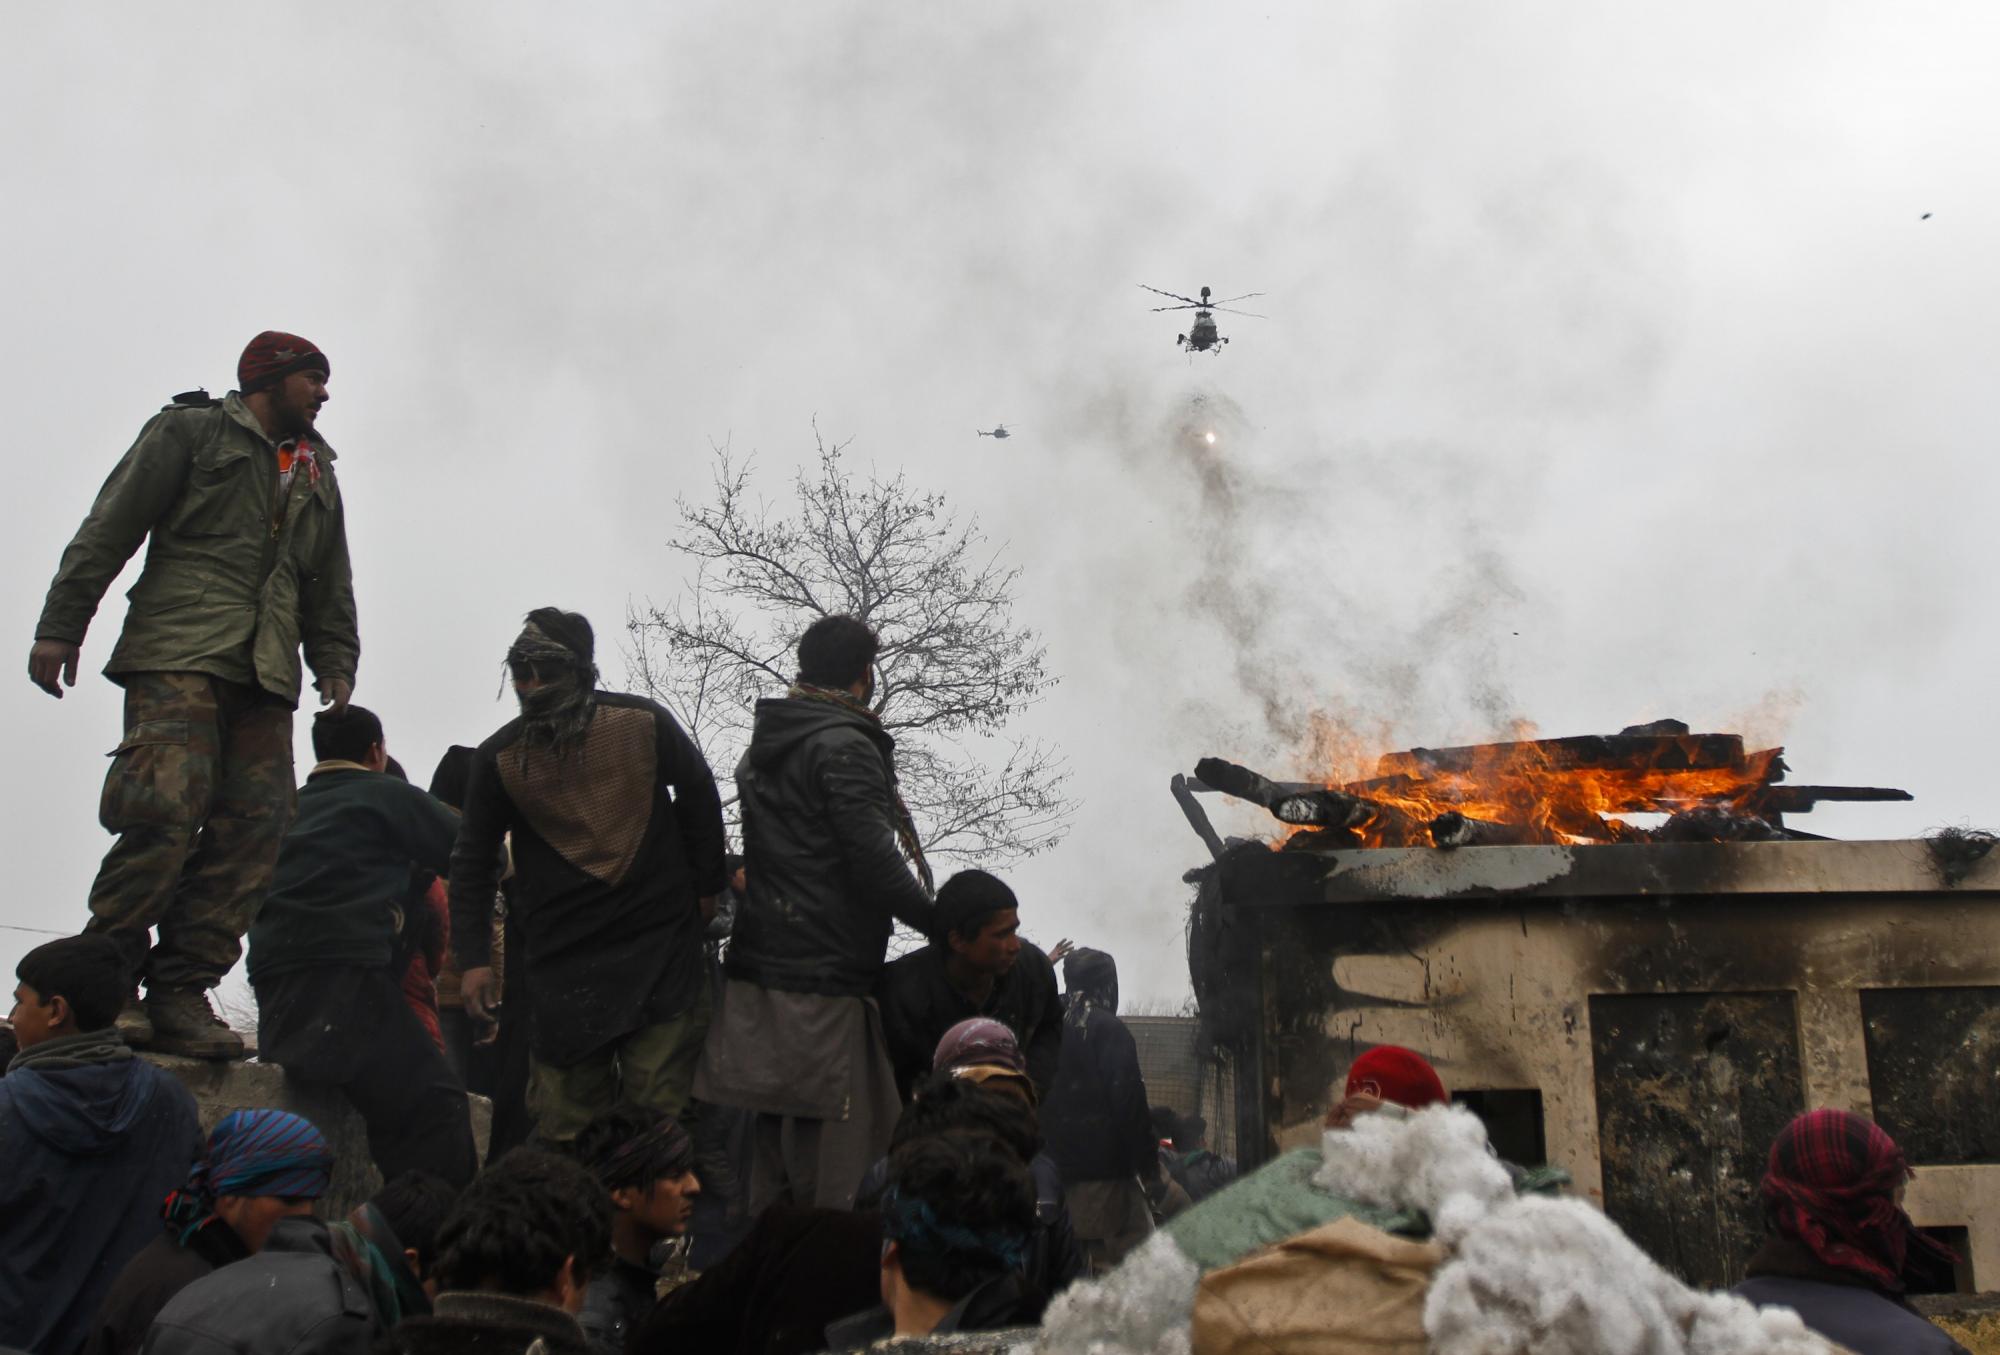 阿富汗民众抗议美军焚烧《古兰经》 美防长为此道歉